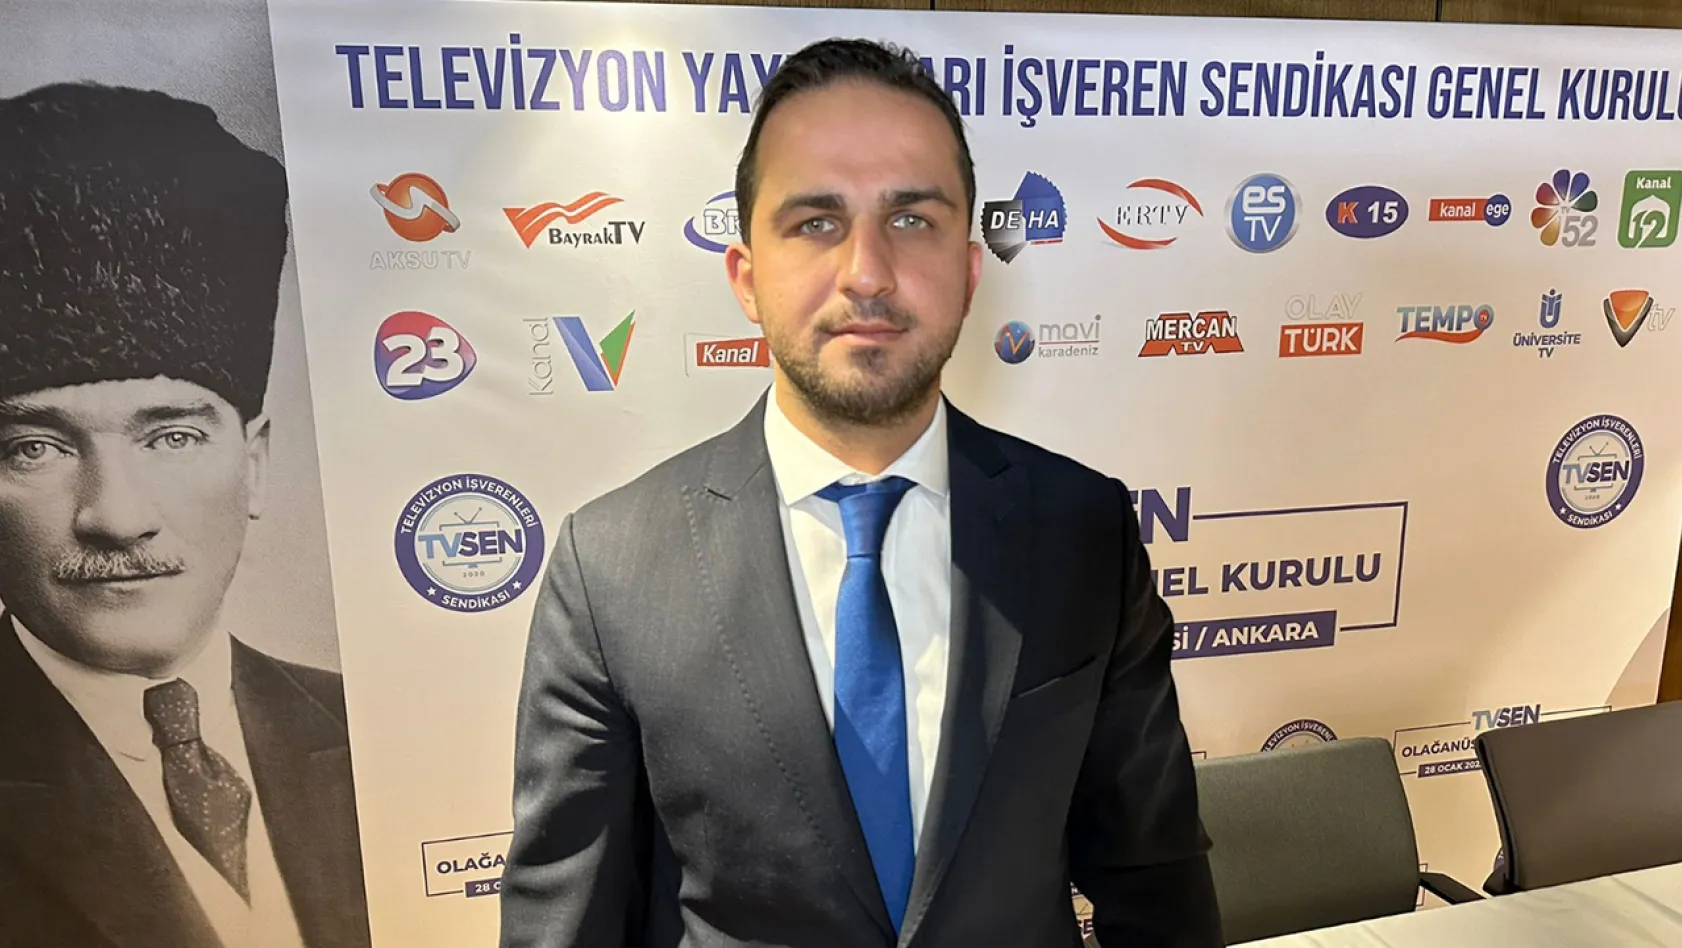 TV SEN Genel Başkanlığına, Yunus Evliyaoğlu seçildi